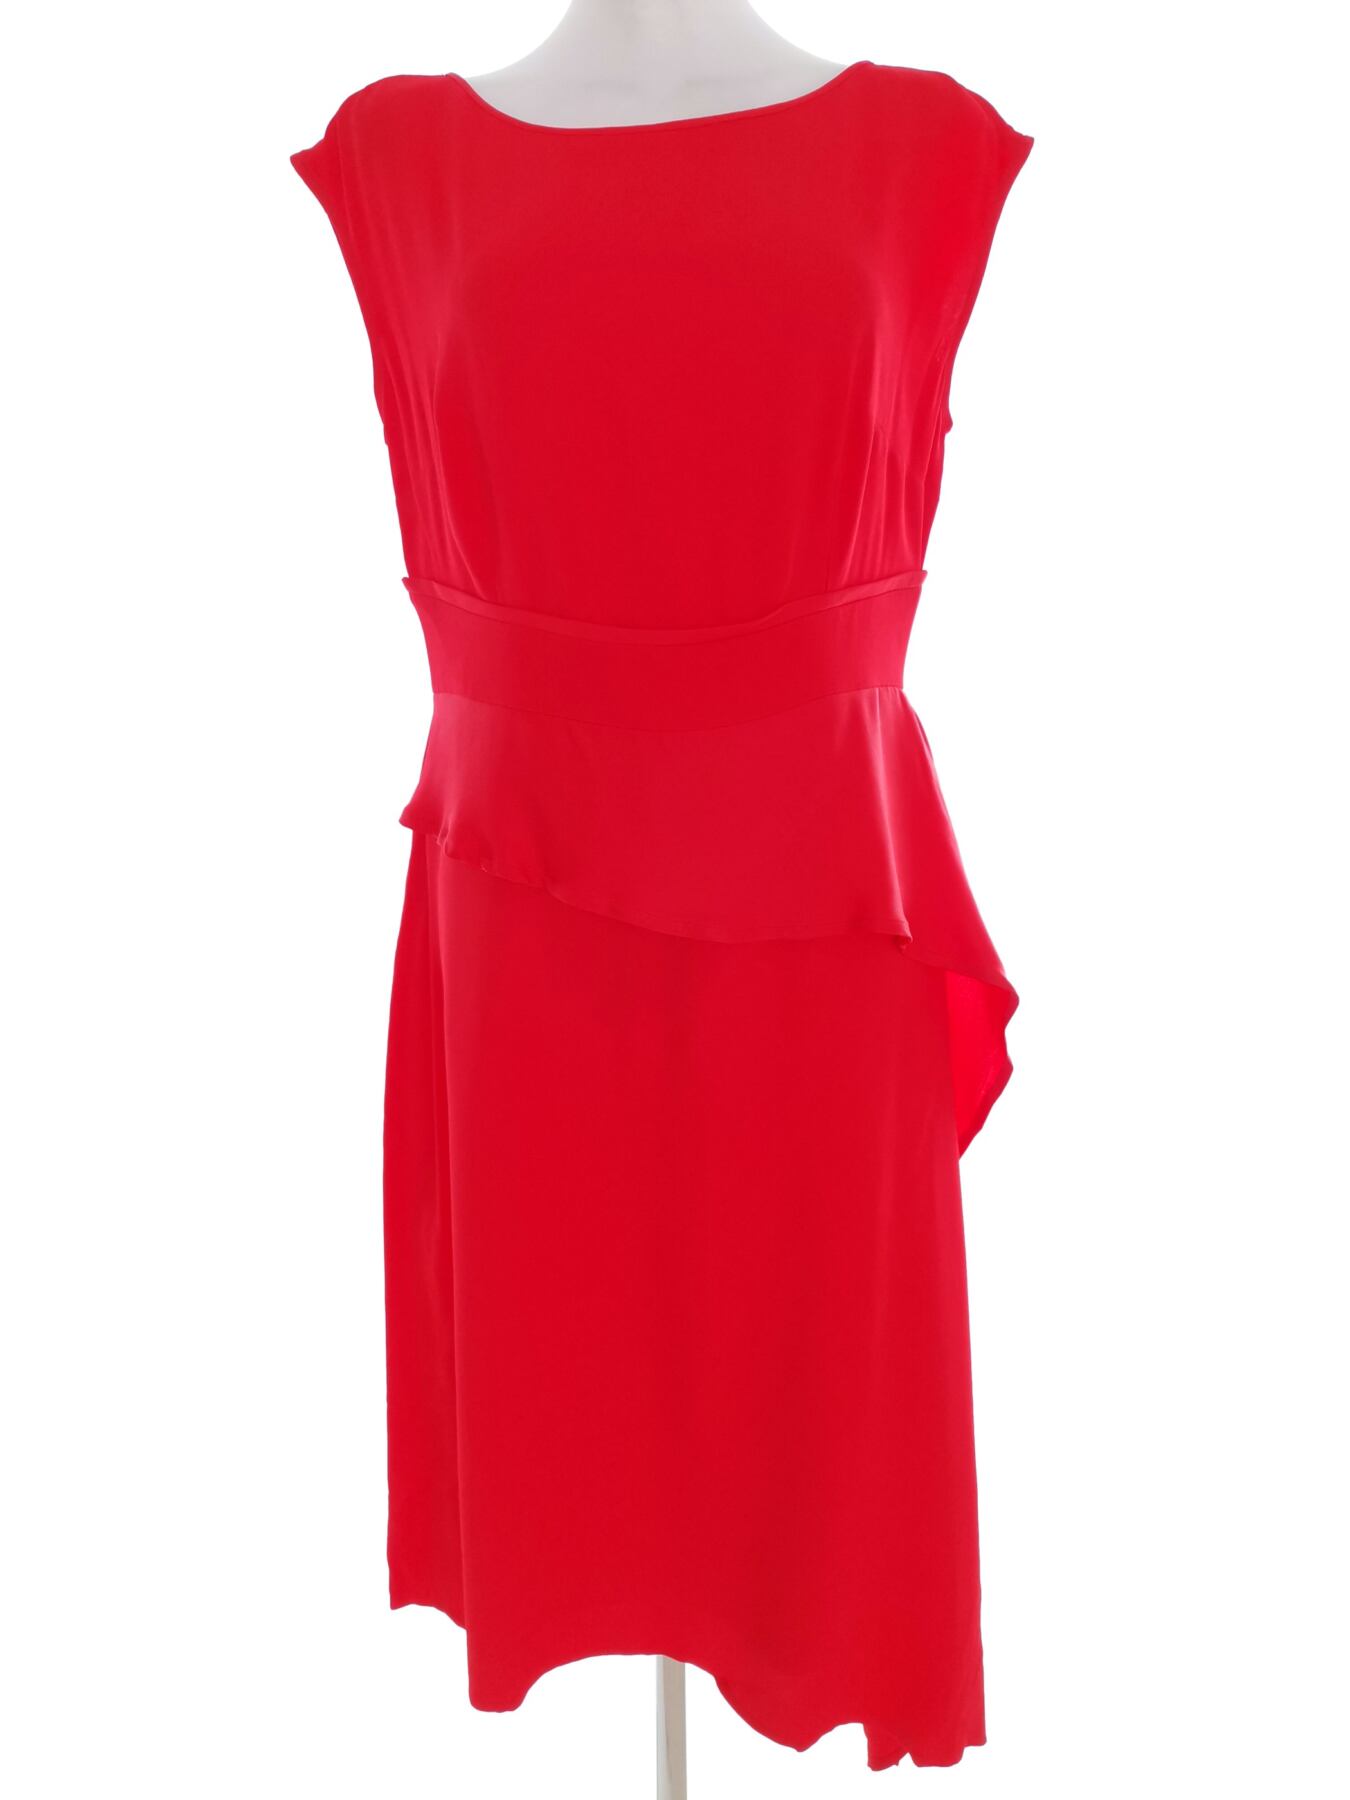 Caroline Kilkenny Rozmiar 12 (40) Kolor Czerwony Okrągły dekolt Sukienka Bodycon Krótki rękaw Materiał Wiskoza 100%